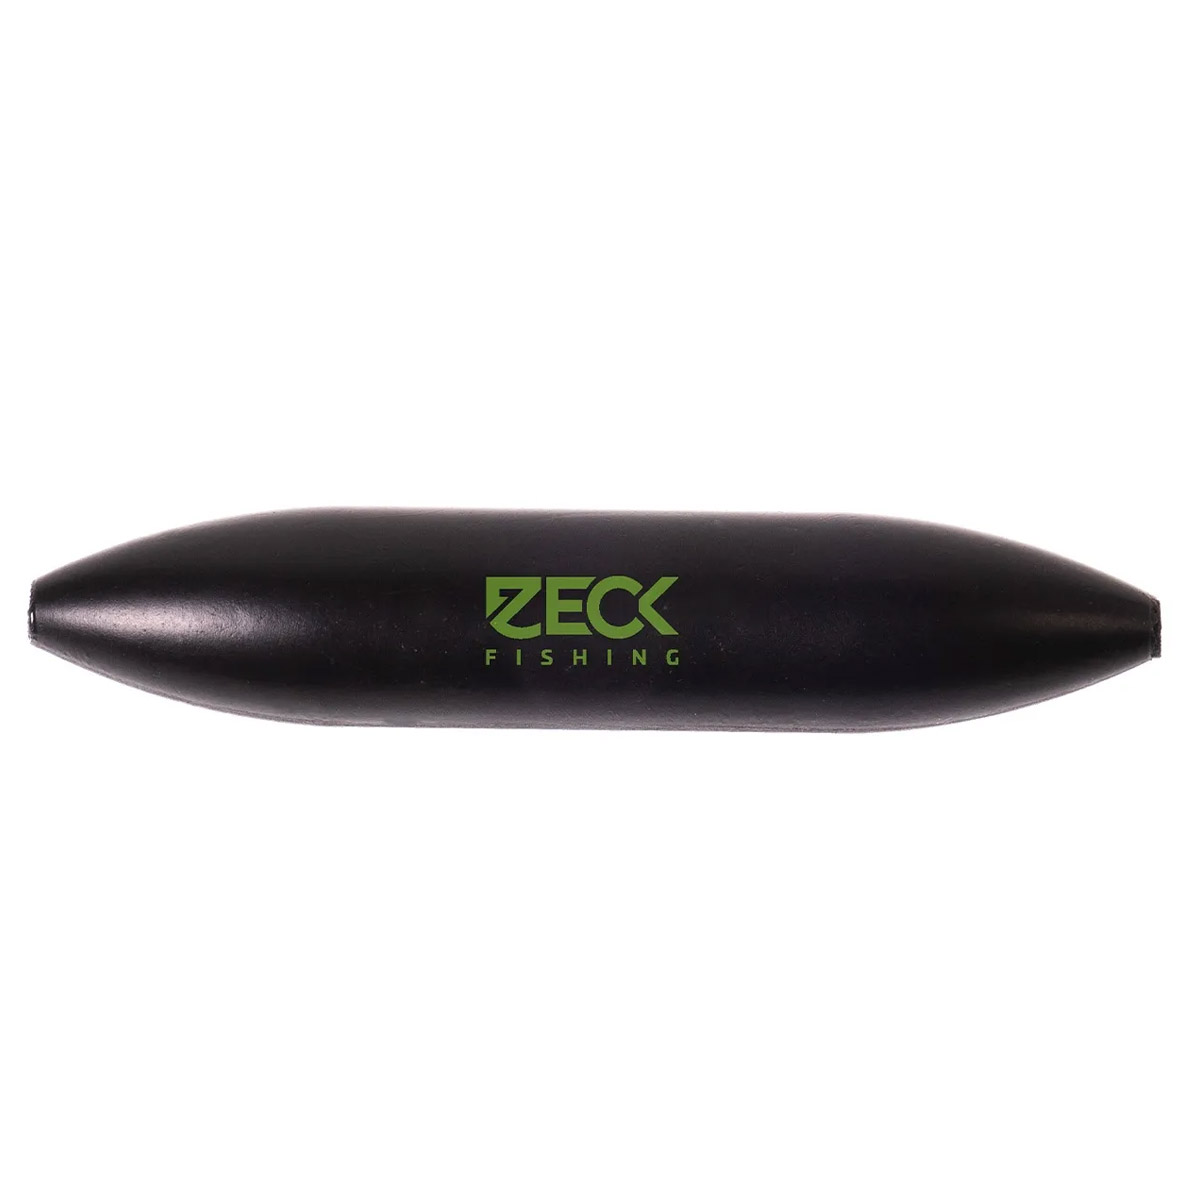 Zeck U-Float Solid Black -  3 gram -  5 gram -  7 gram -  10 gram -  15 gram -  30 gram -  40 gram -  20 gram